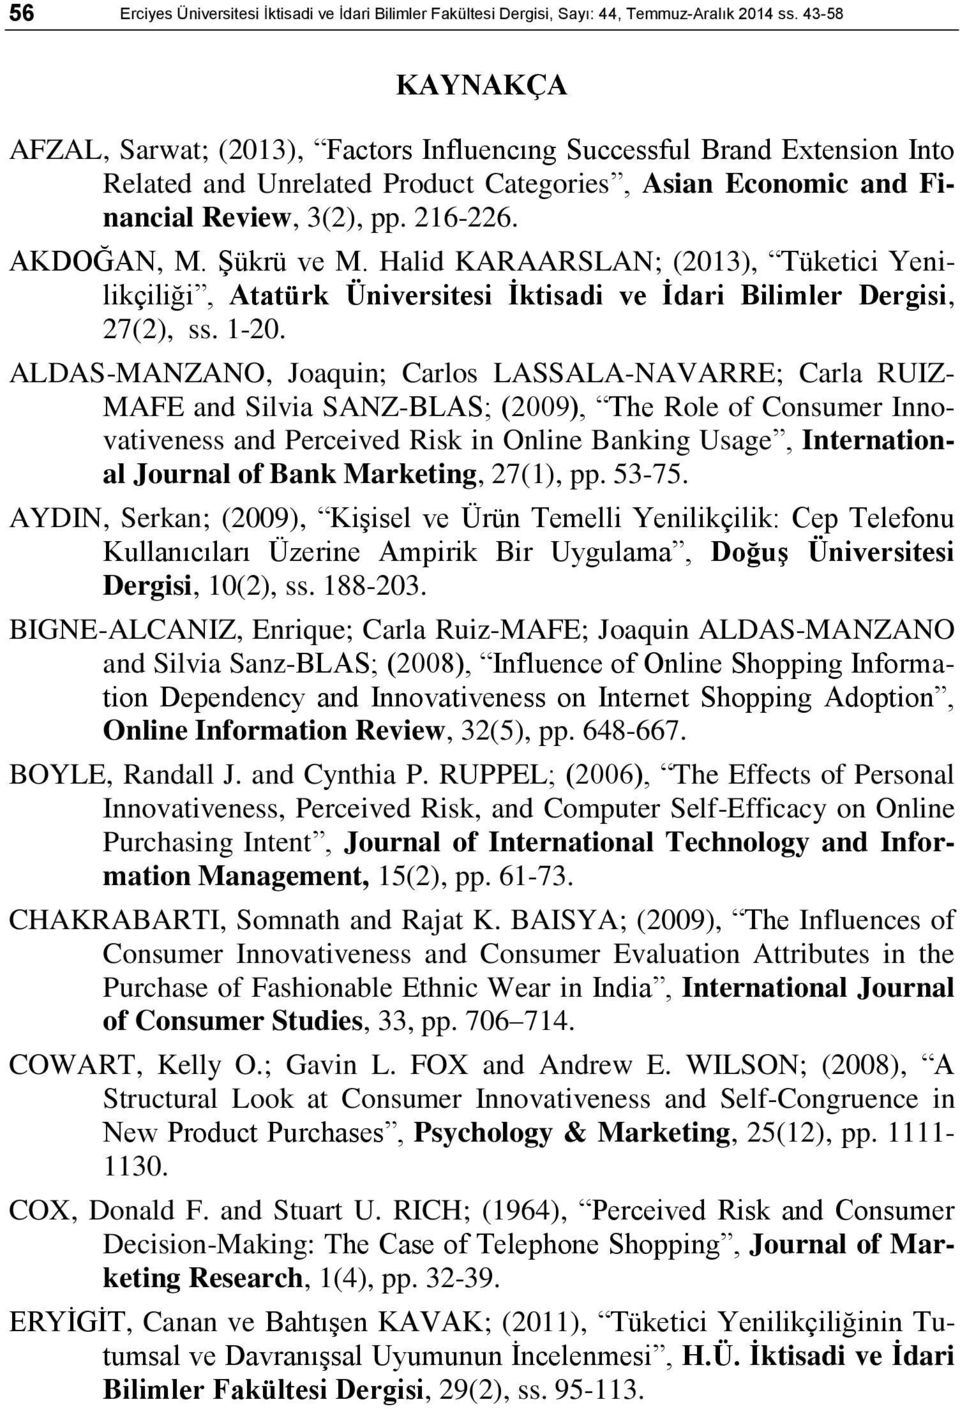 ġükrü ve M. Halid KARAARSLAN; (2013), Tüketici Yenilikçiliği, Atatürk Üniversitesi Ġktisadi ve Ġdari Bilimler Dergisi, 27(2), ss. 1-20.